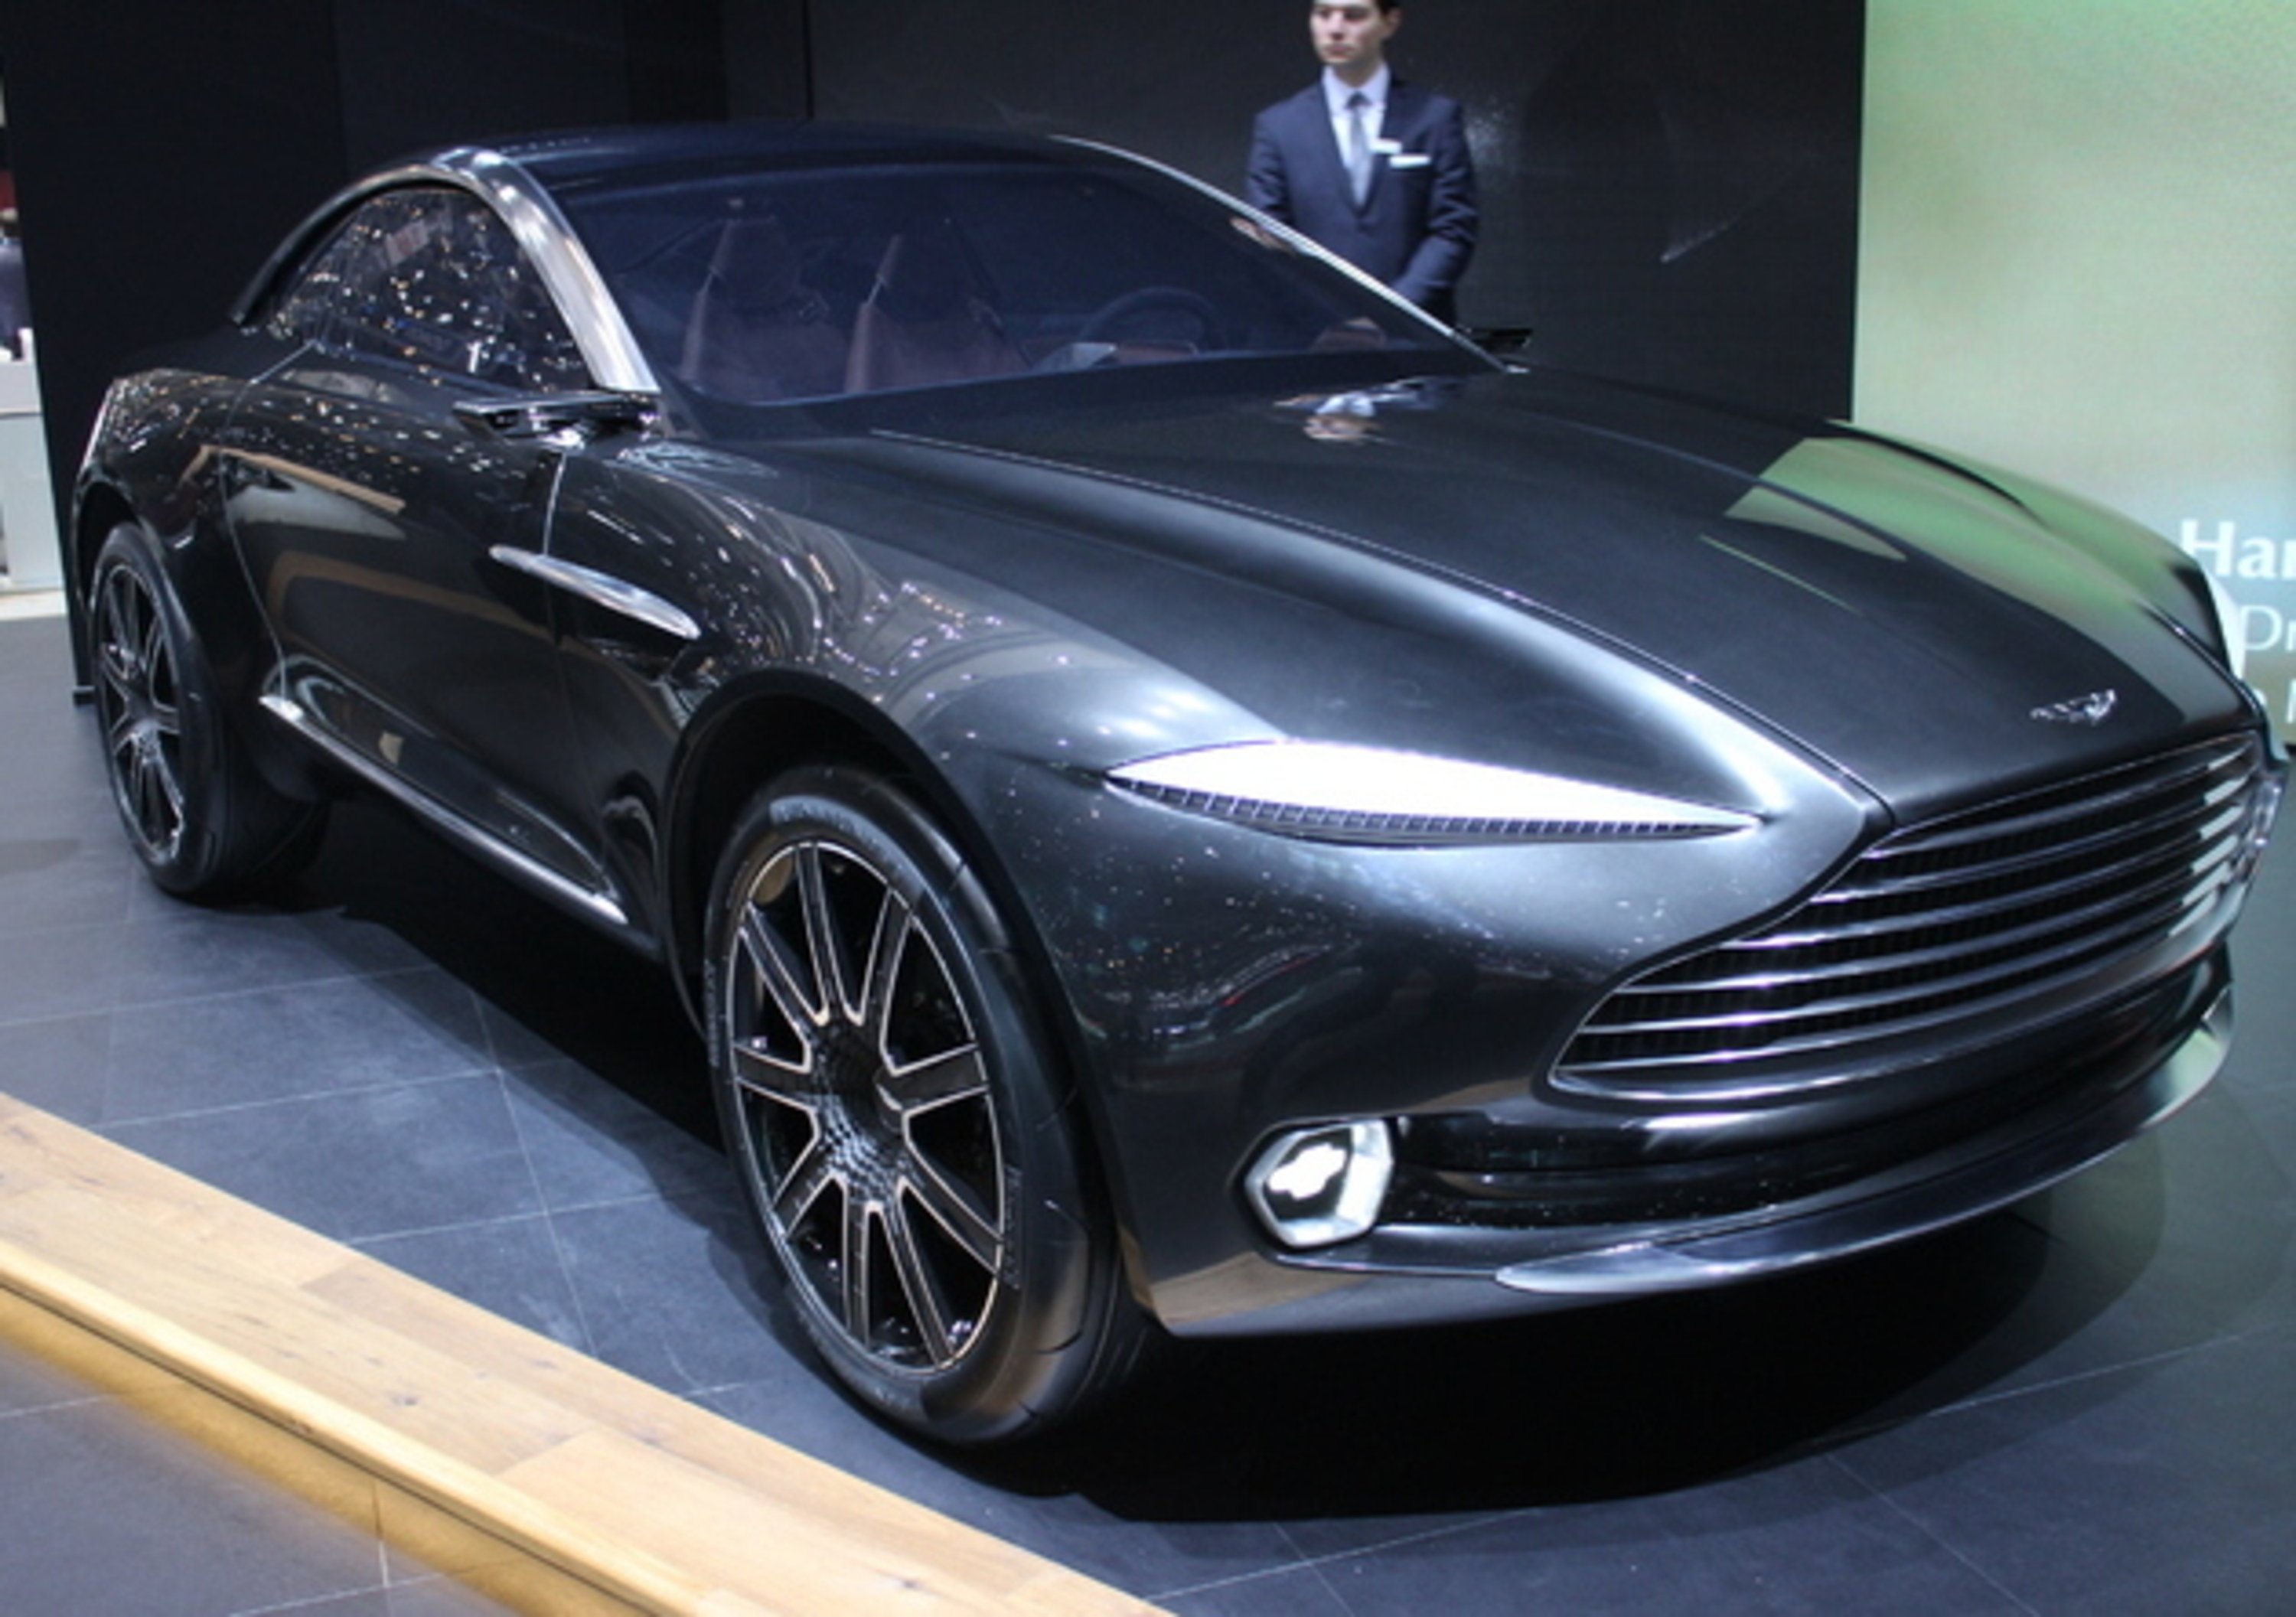 Aston Martin DBX. SUV a partire dal 2019